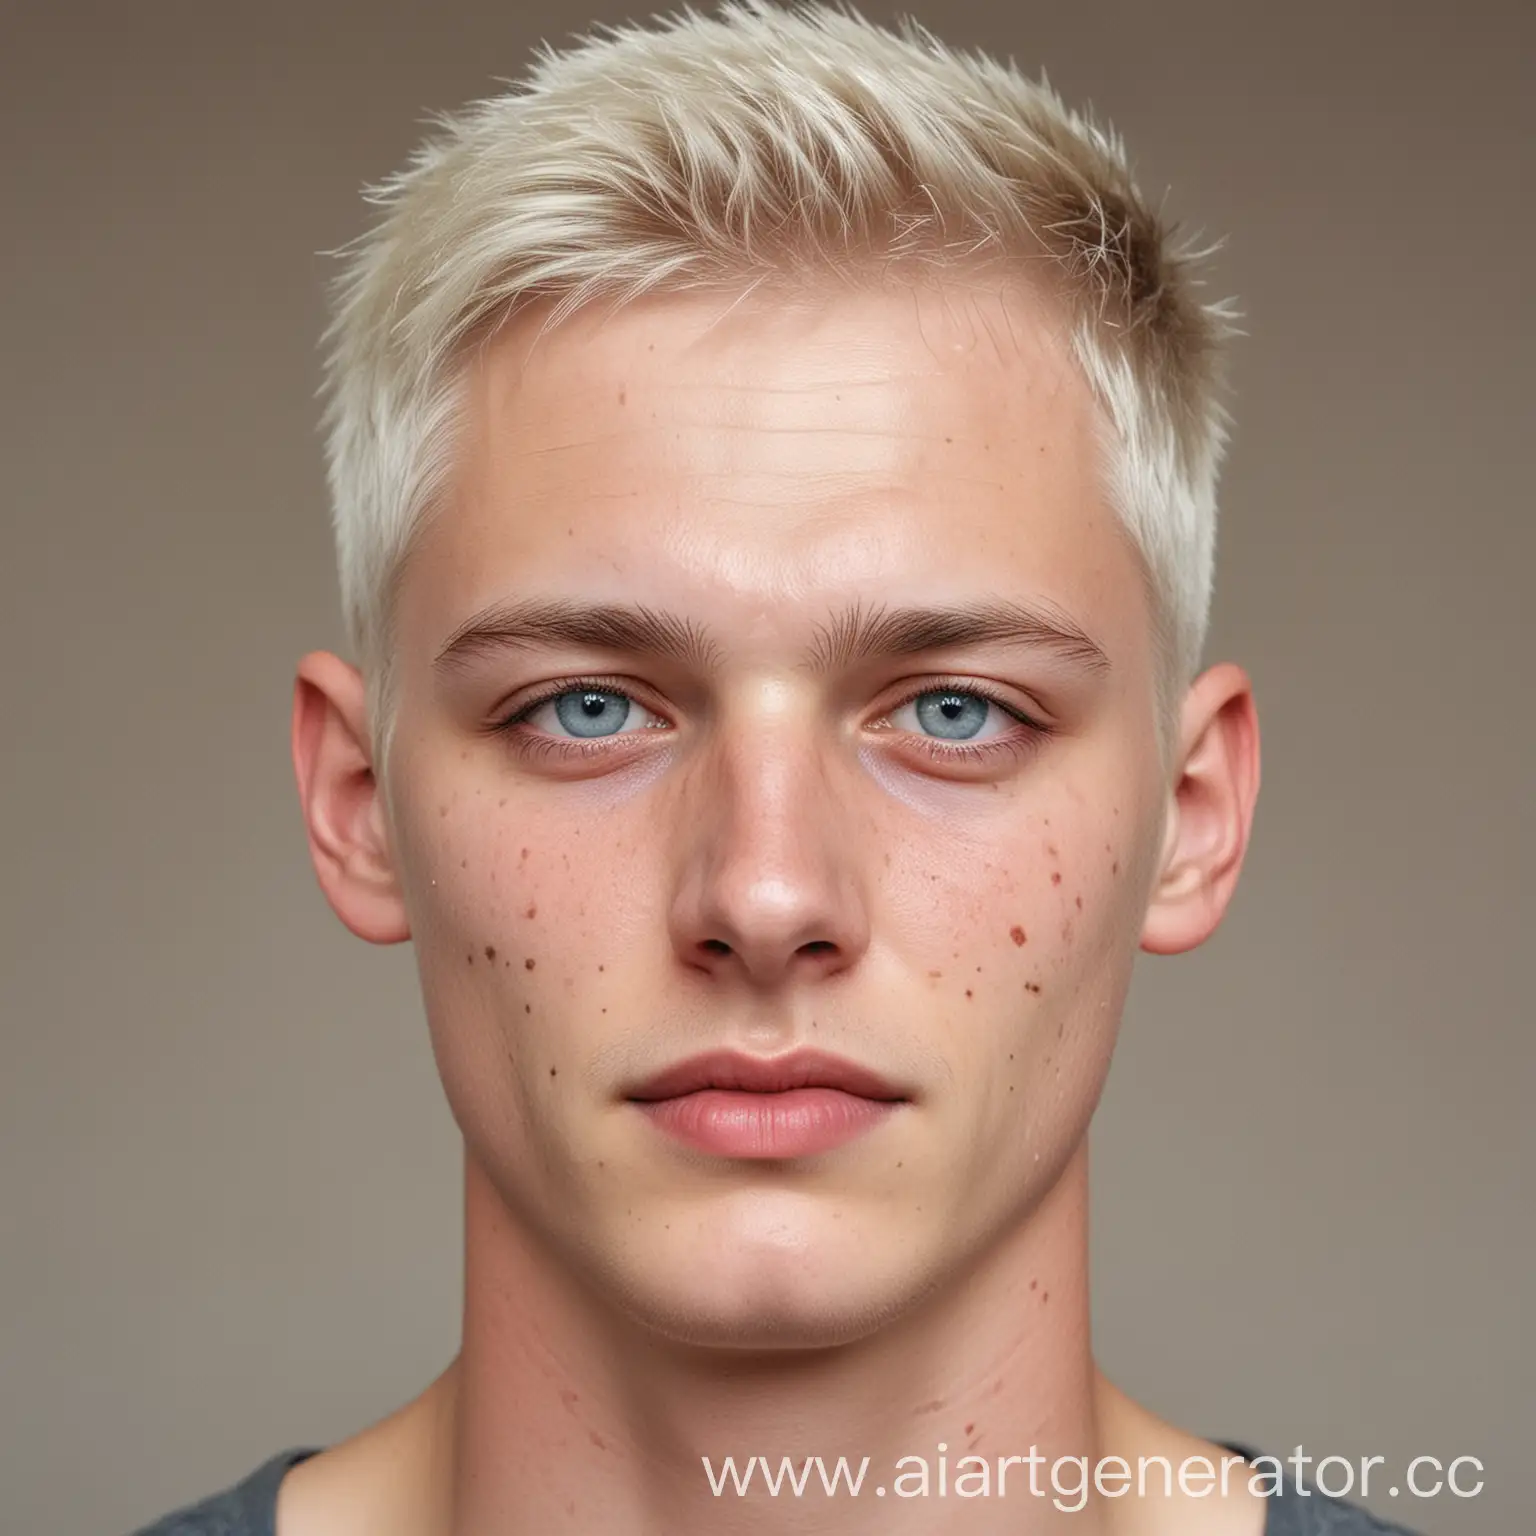 красивый парень немец, светло-русые волосы стрижиные под каре, серо-голубые глаза, синяки под глазами, бледная кожа, светлые веснушки, в углу глаза небольшой шрам.